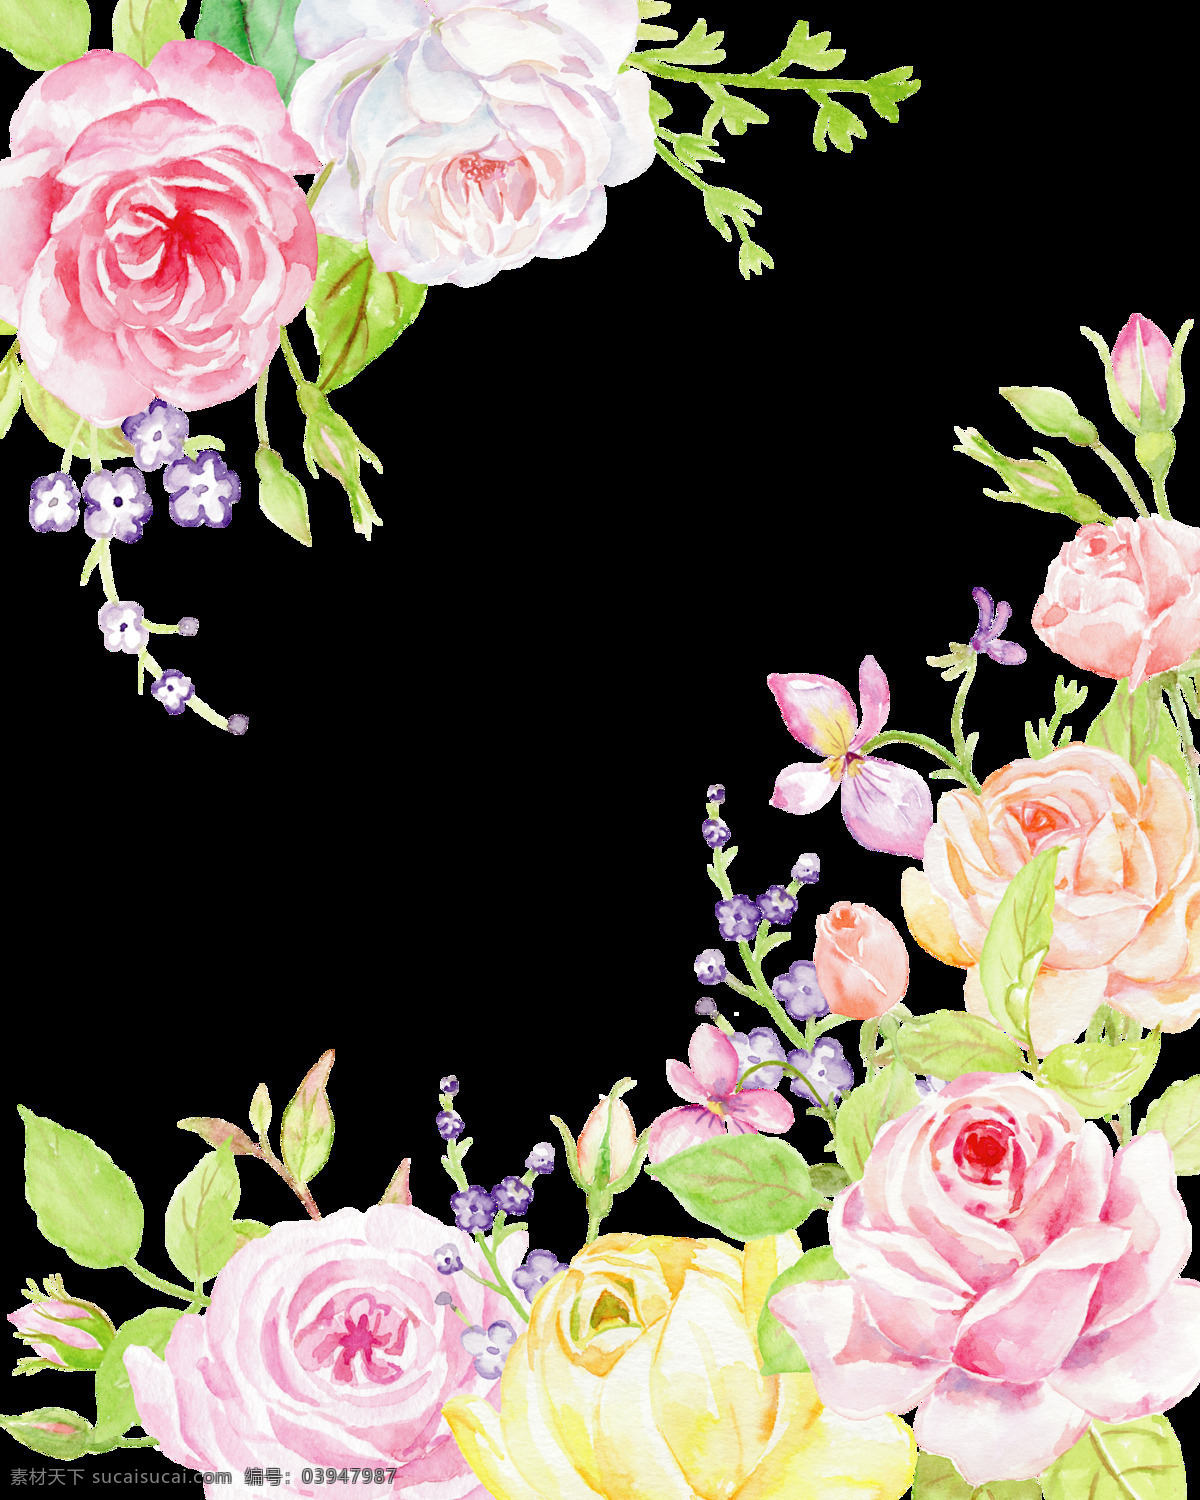 手绘 婚礼 卡片 装饰 花朵 透明 玫瑰花 粉红色 浪漫 白色 真爱 透明素材 免扣素材 装饰图片